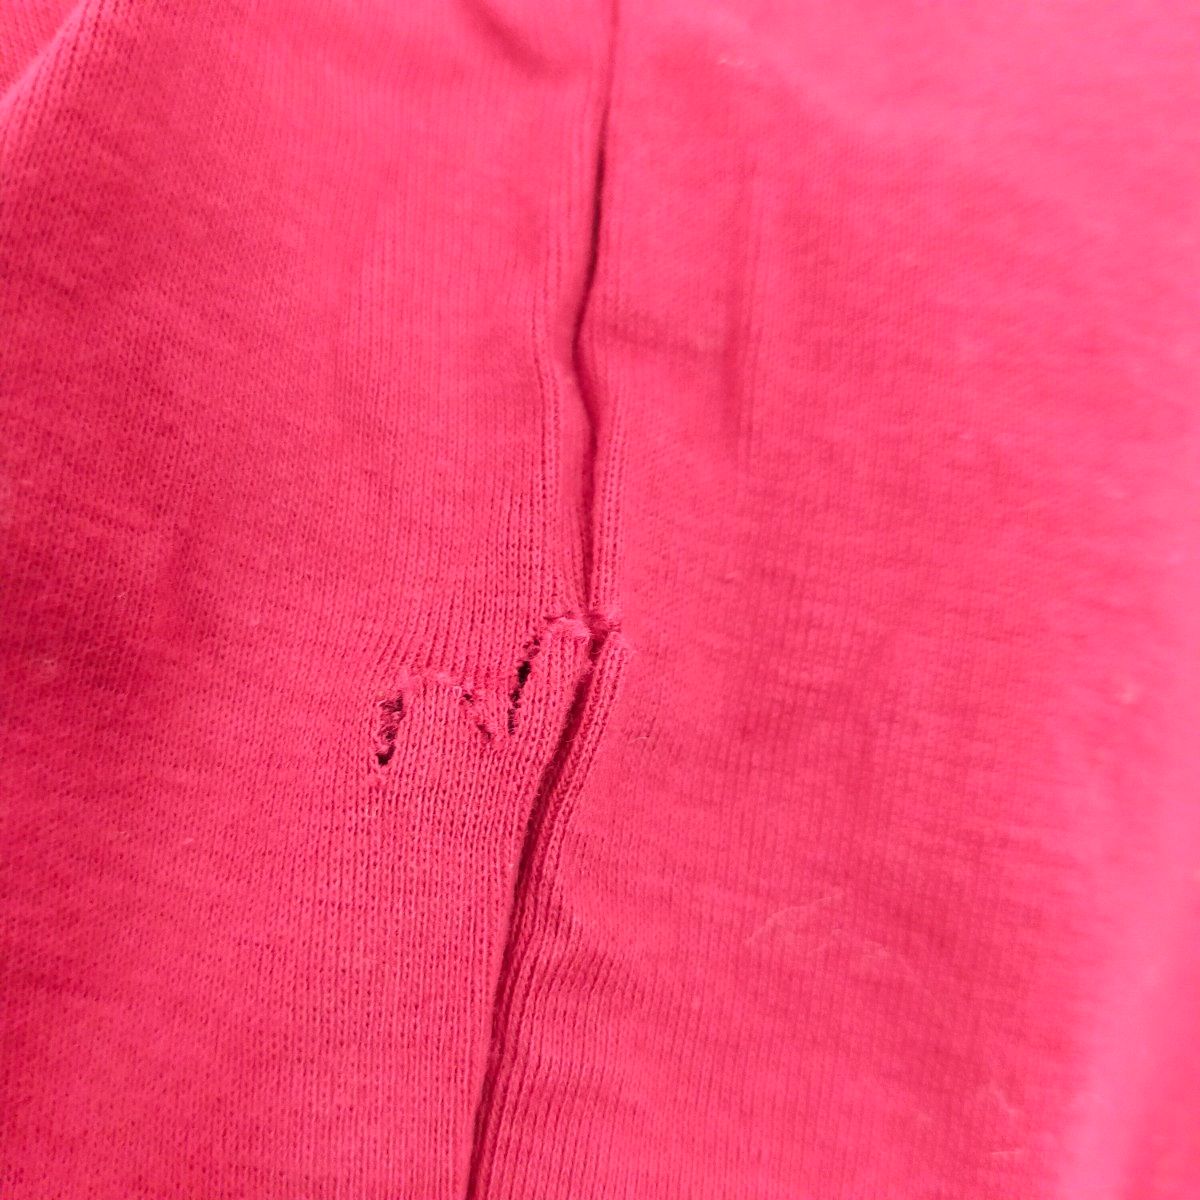 訳あり 未使用品 Capi-elle Tシャツ レディース M 赤 レッド